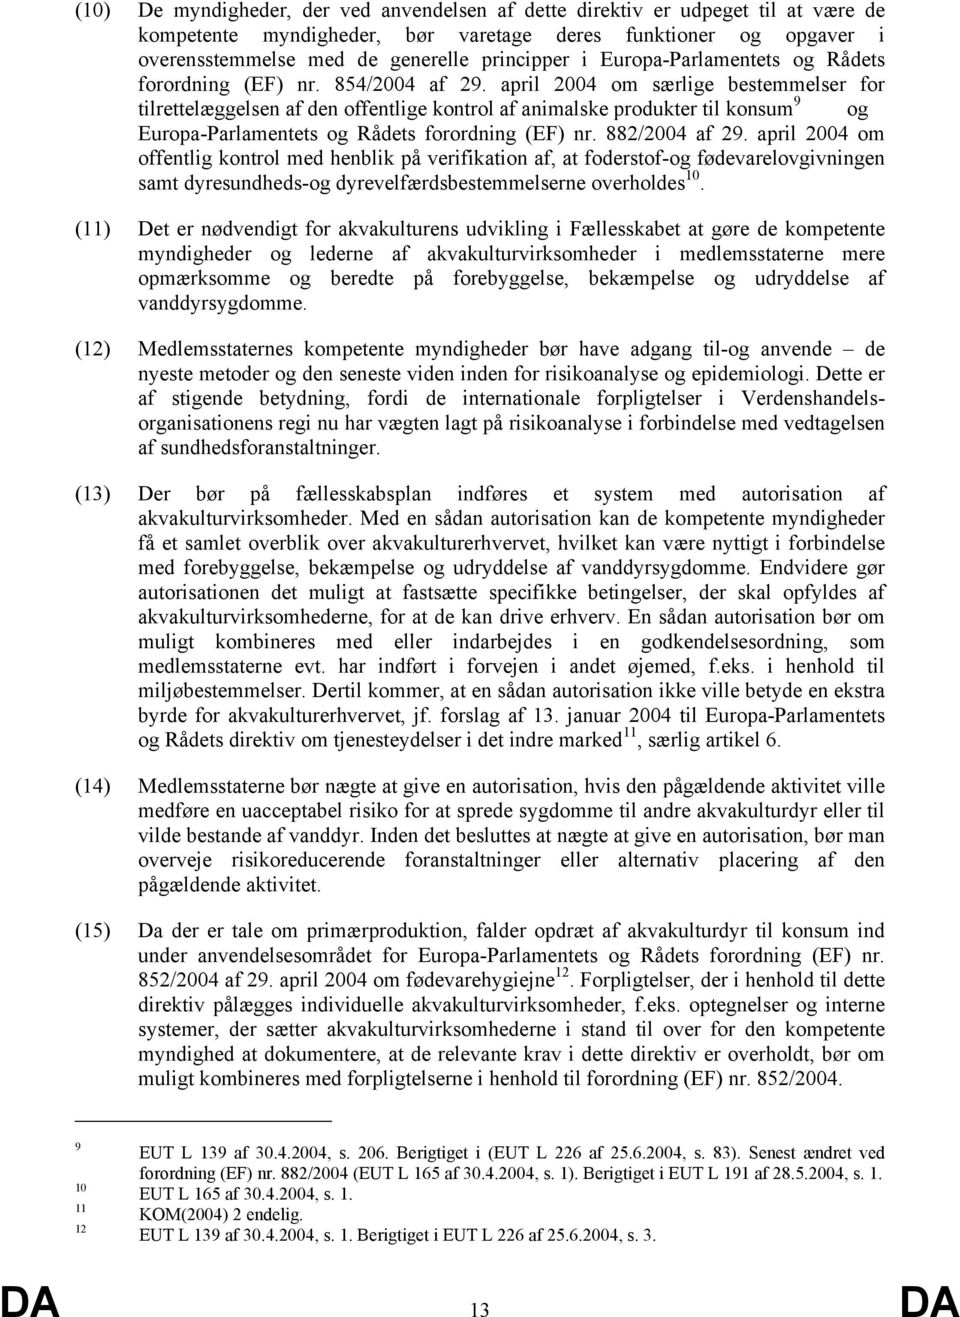 april 2004 om særlige bestemmelser for tilrettelæggelsen af den offentlige kontrol af animalske produkter til konsum 9 og Europa-Parlamentets og Rådets forordning (EF) nr. 882/2004 af 29.